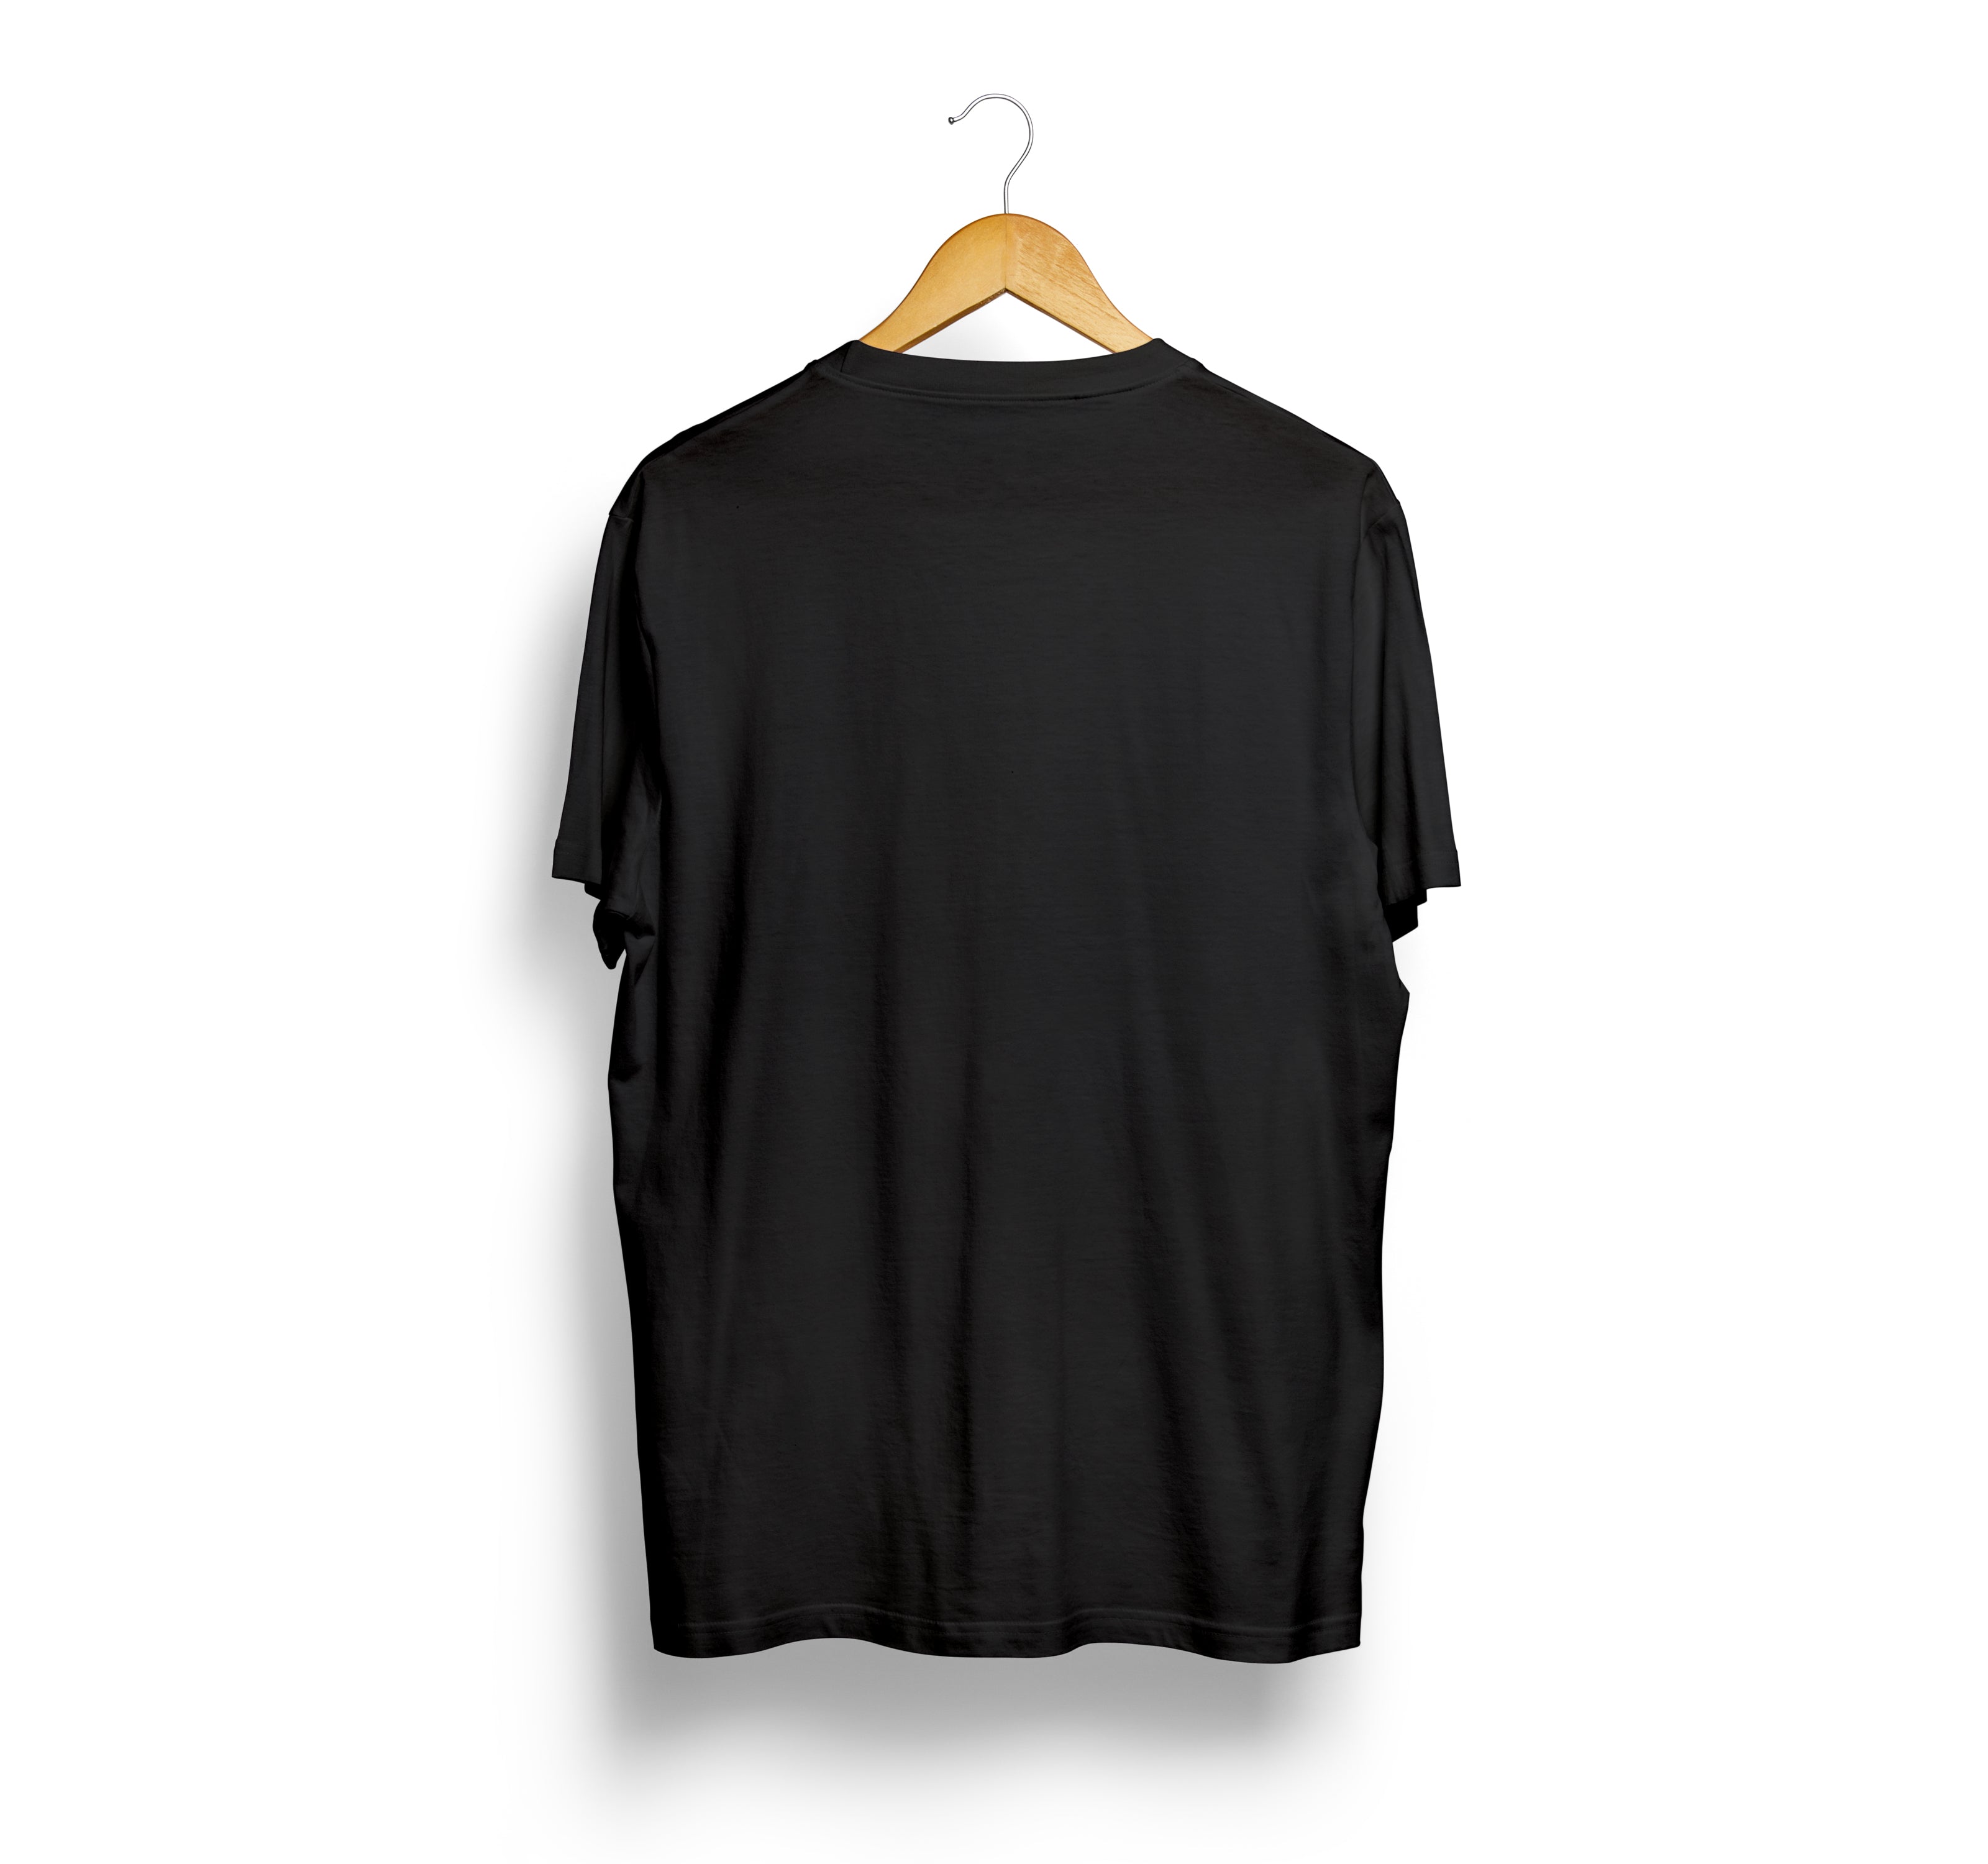 Bizzar's Black T-shirt Back